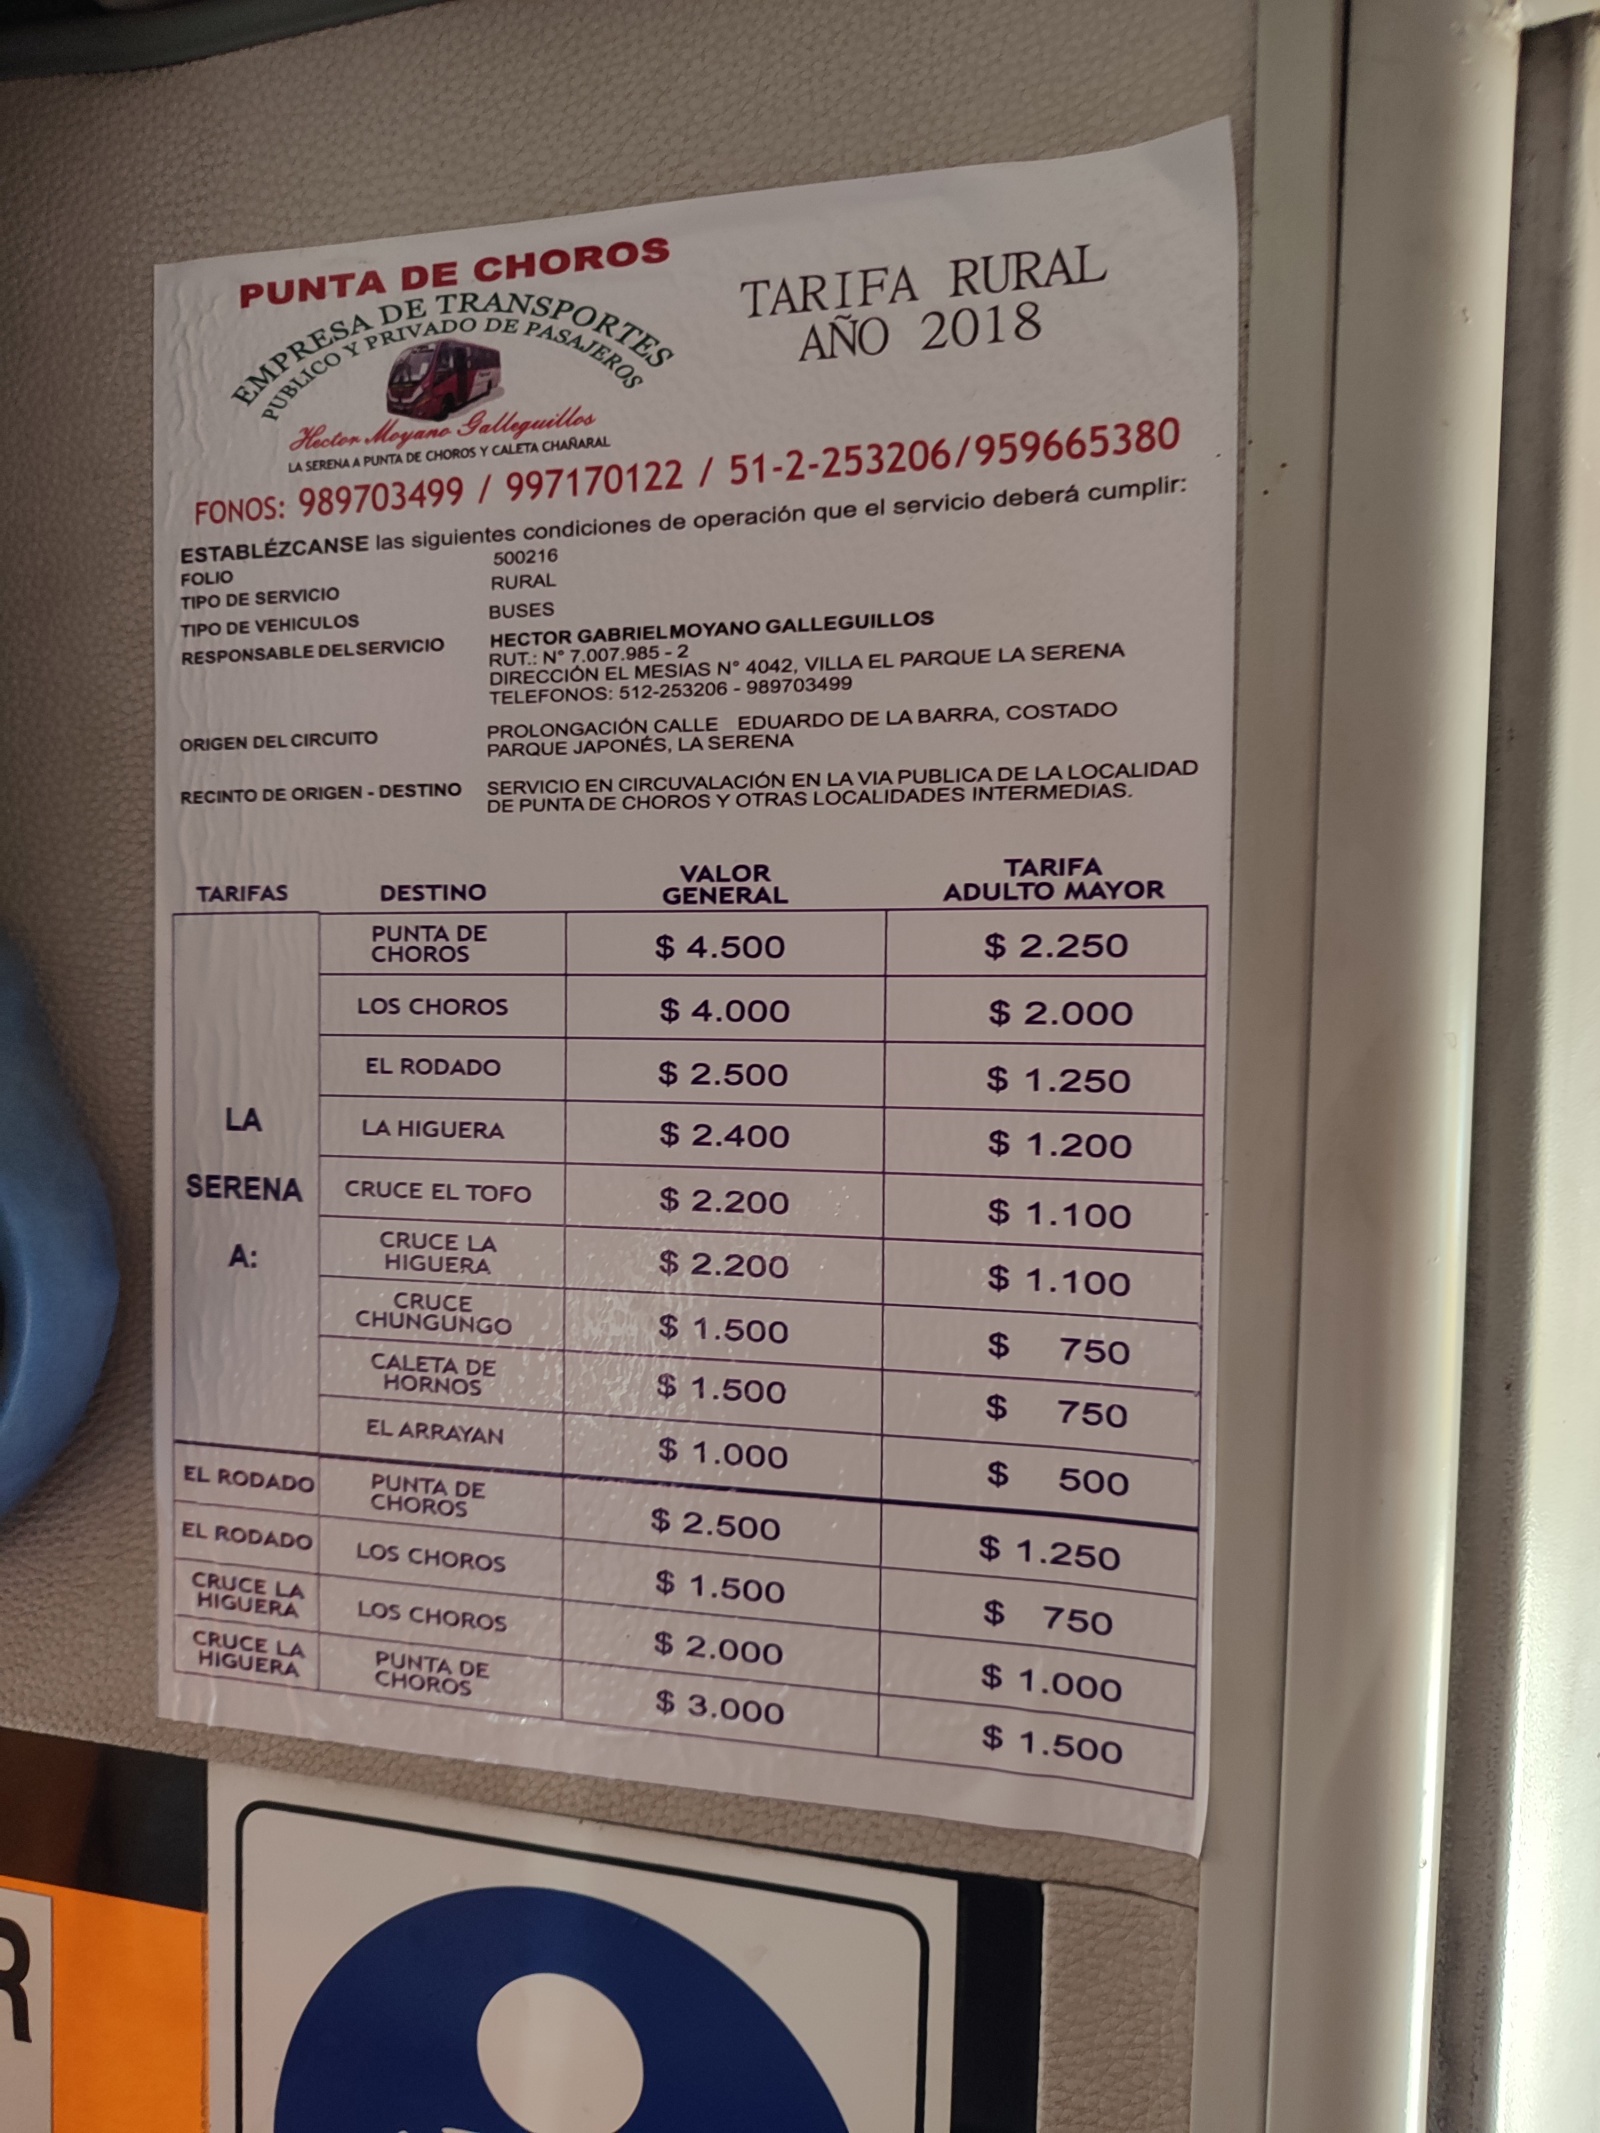 Цены в чилийском международном автобусе. Они указаны в песо, а не долларах.